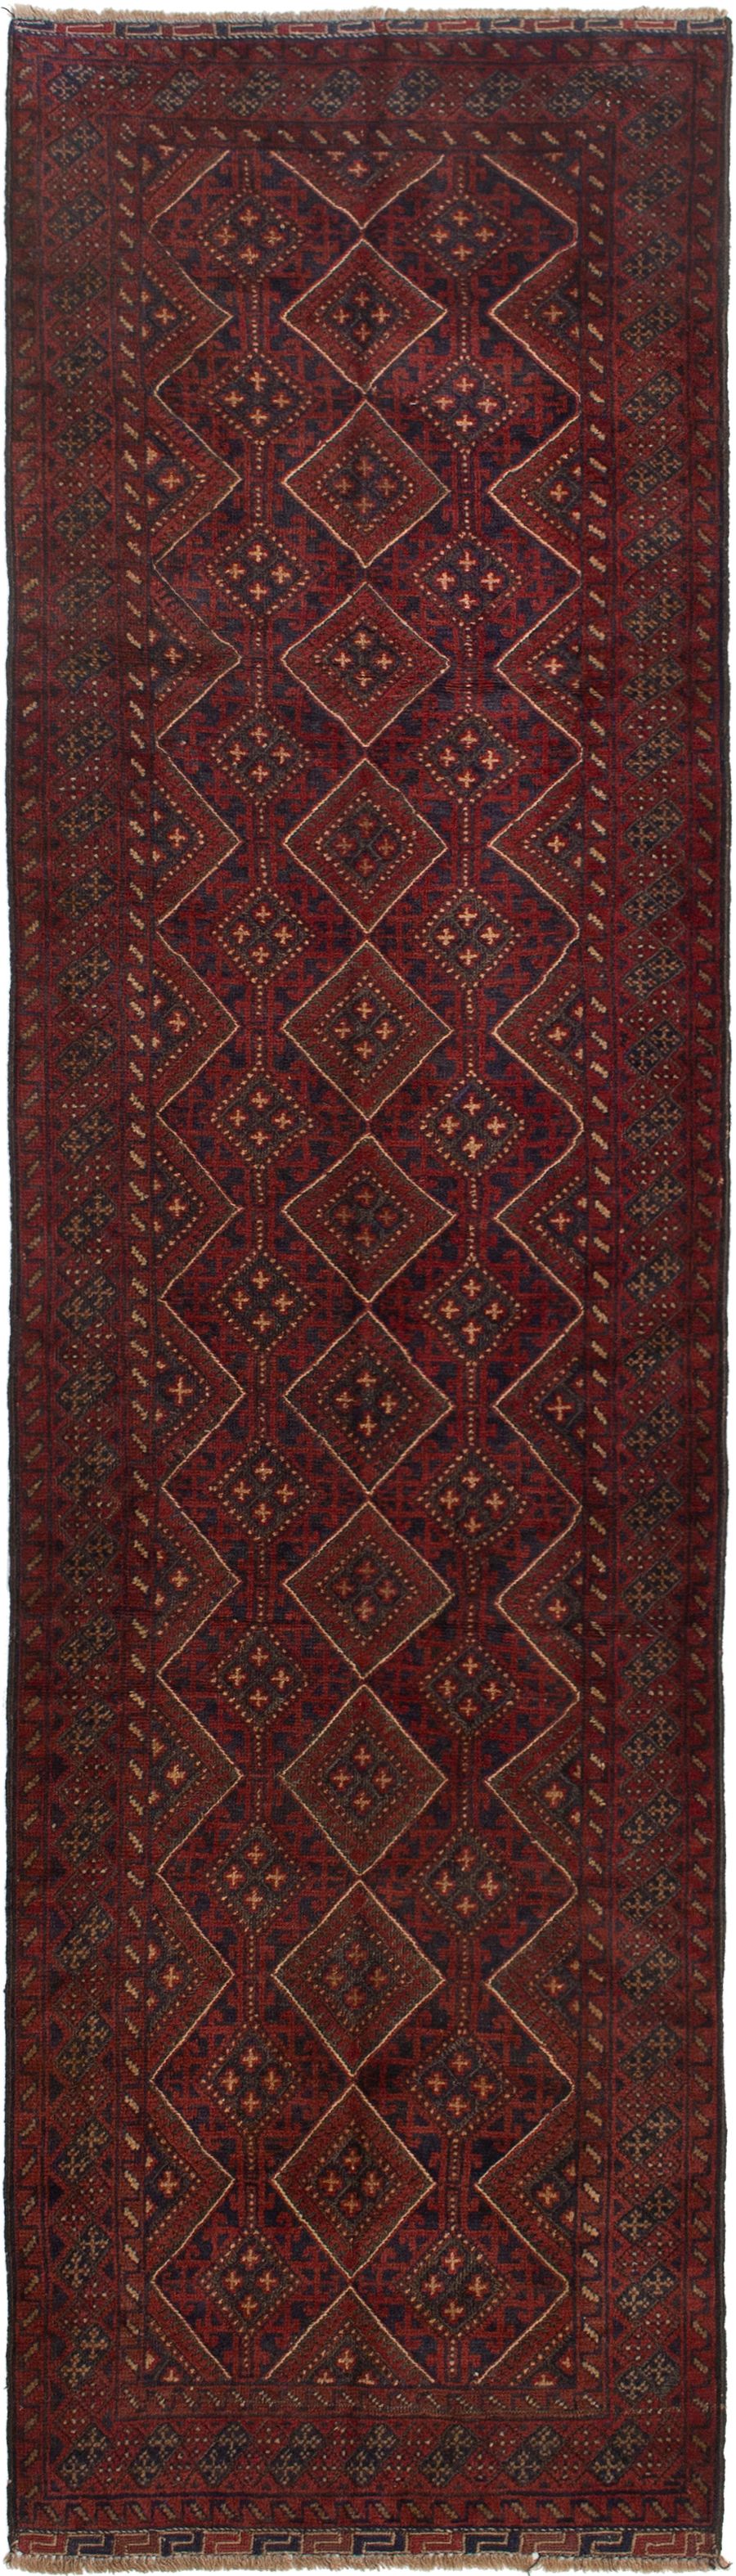 Hand-knotted Tajik Caucasian Dark Red Wool Rug 2'7" x 9'1" Size: 2'7" x 9'1"  